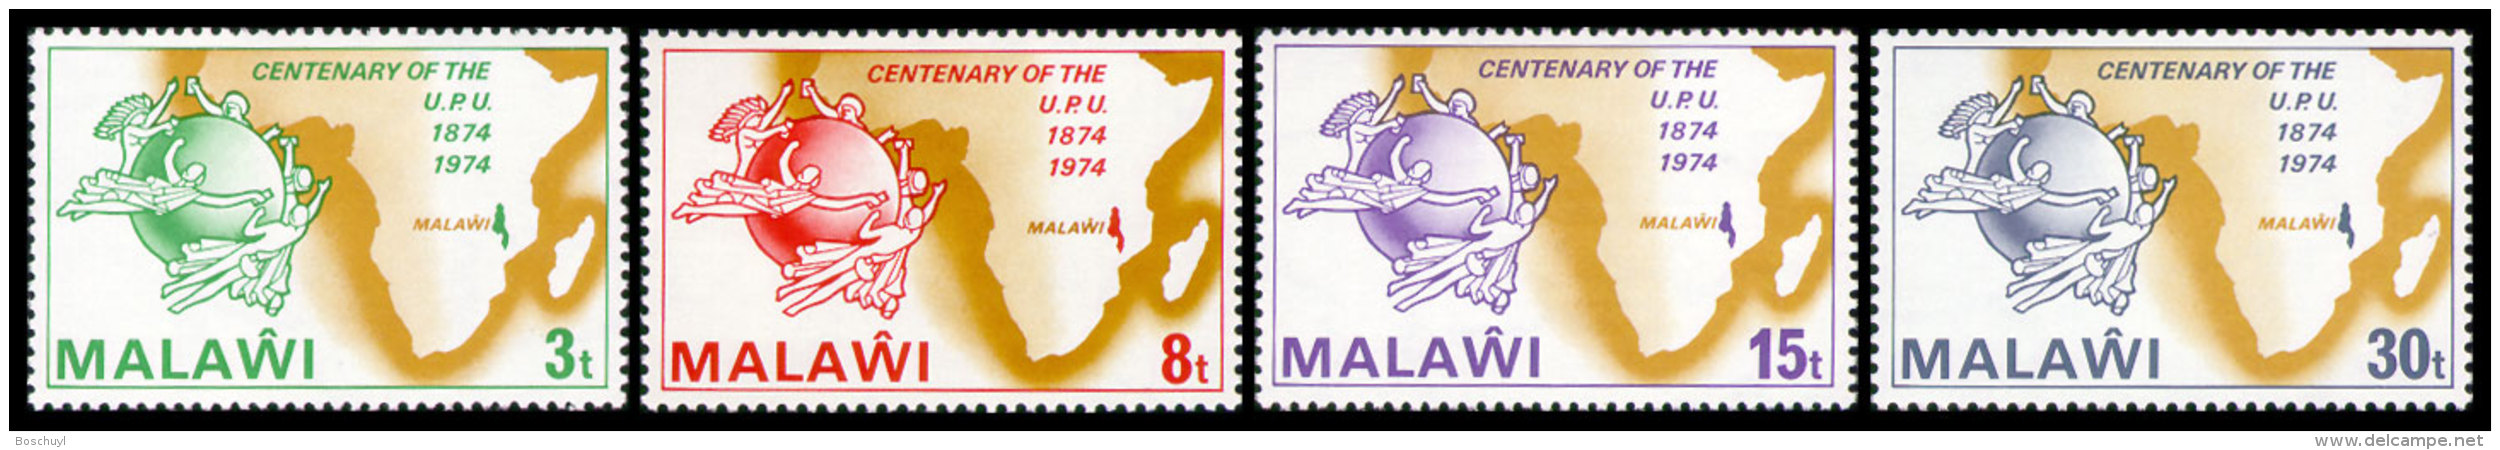 Malawi, 1974, UPU Centenary, United Nations, MNH, Michel 216-219 - Malawi (1964-...)